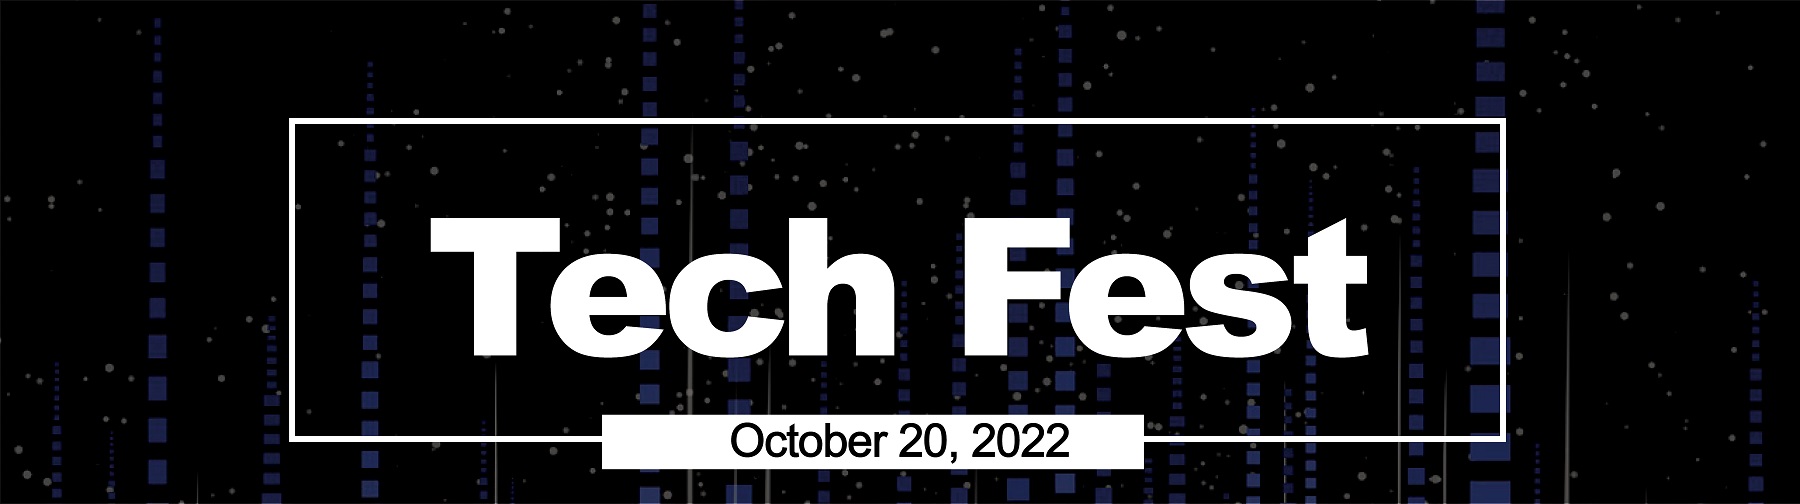 banner for tech fest